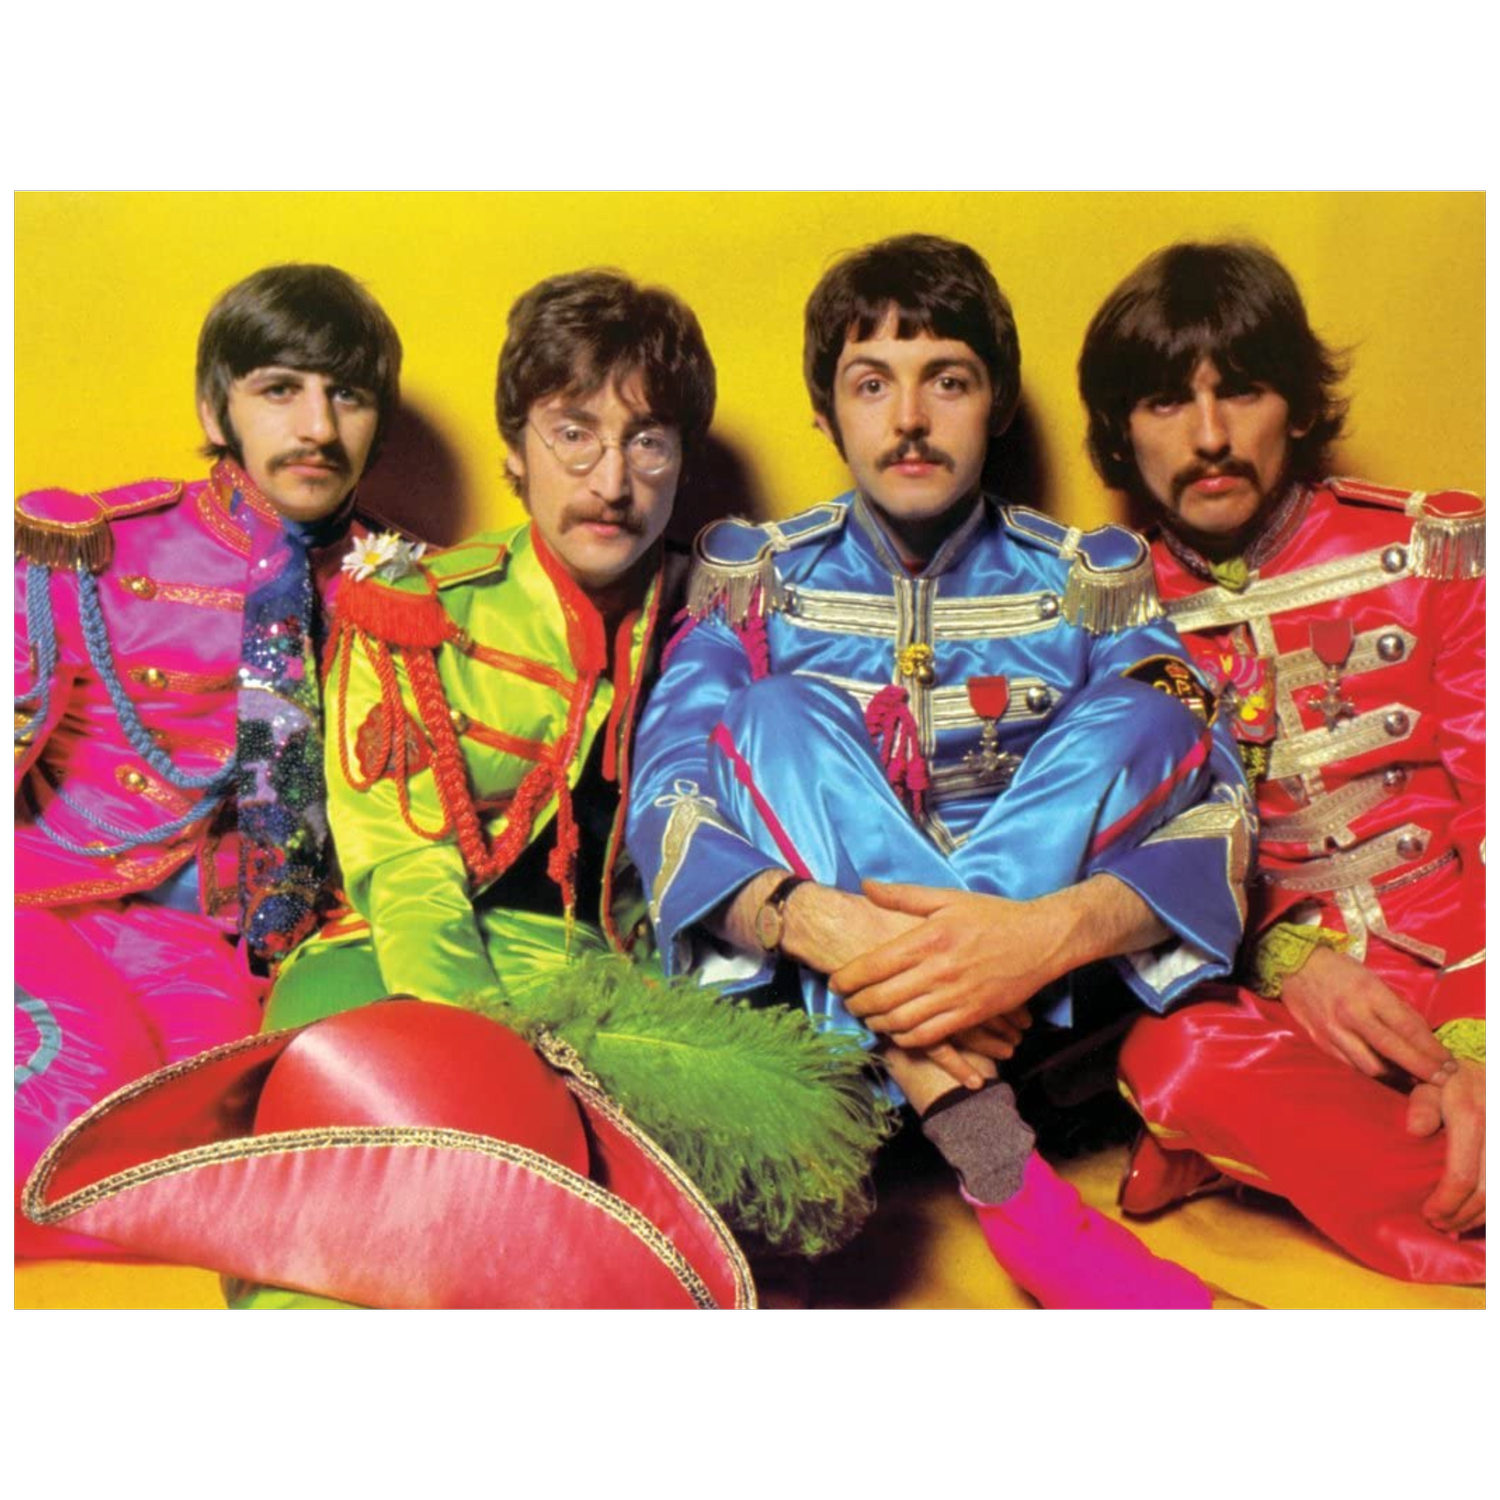 Sgt. Pepper's Very Best Songs — Their Very Best